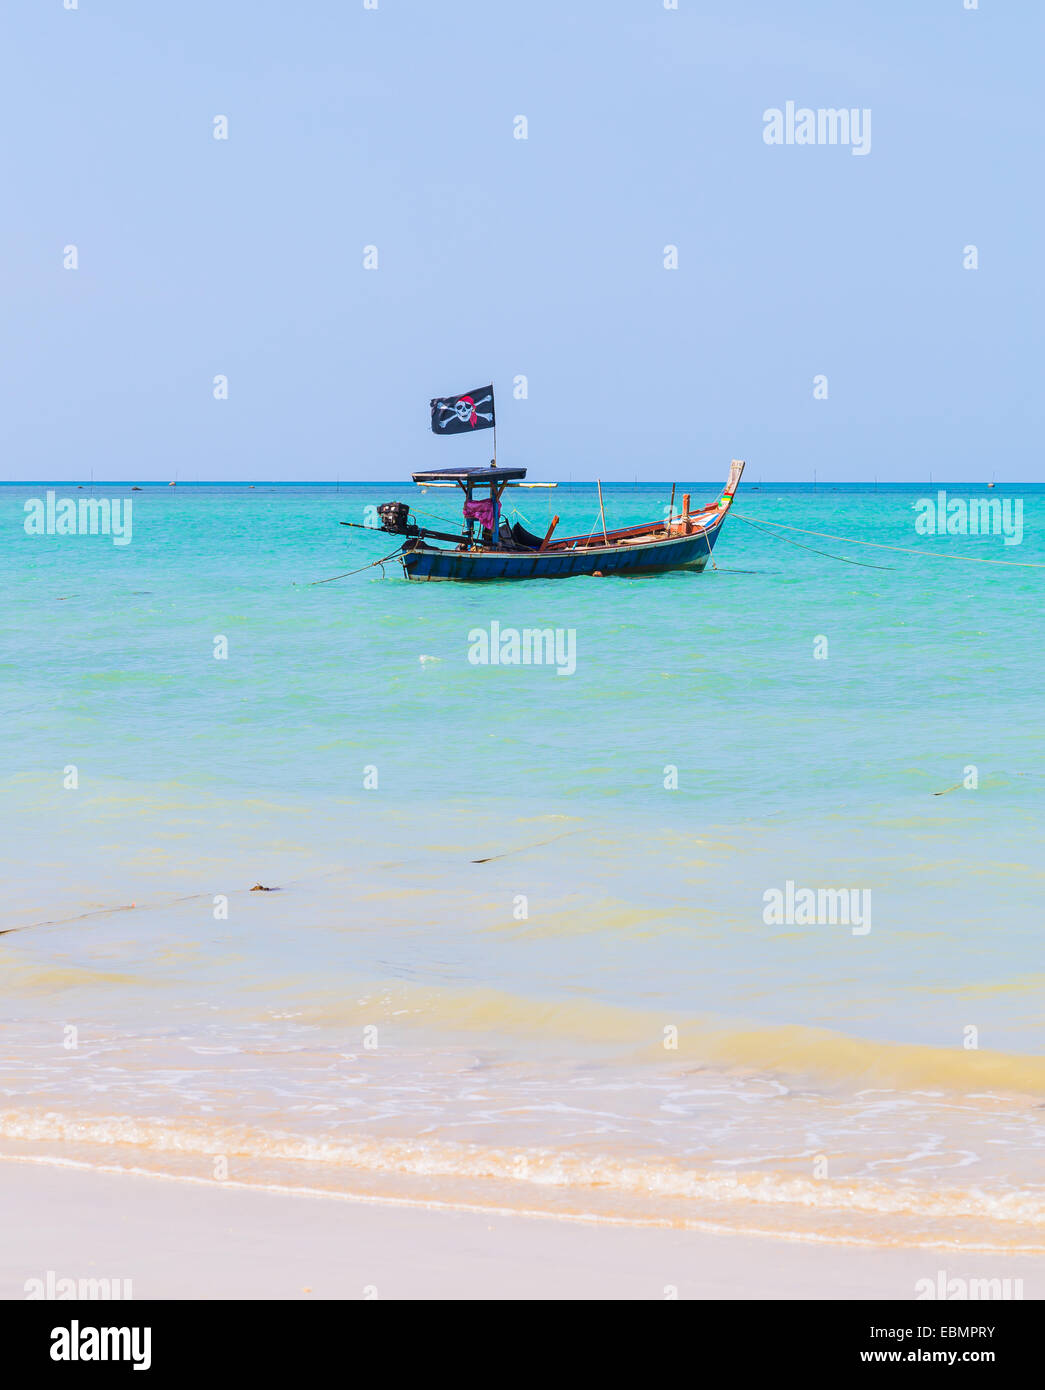 Playa de arena blanca y barco pirata en el cielo azul. Foto de stock